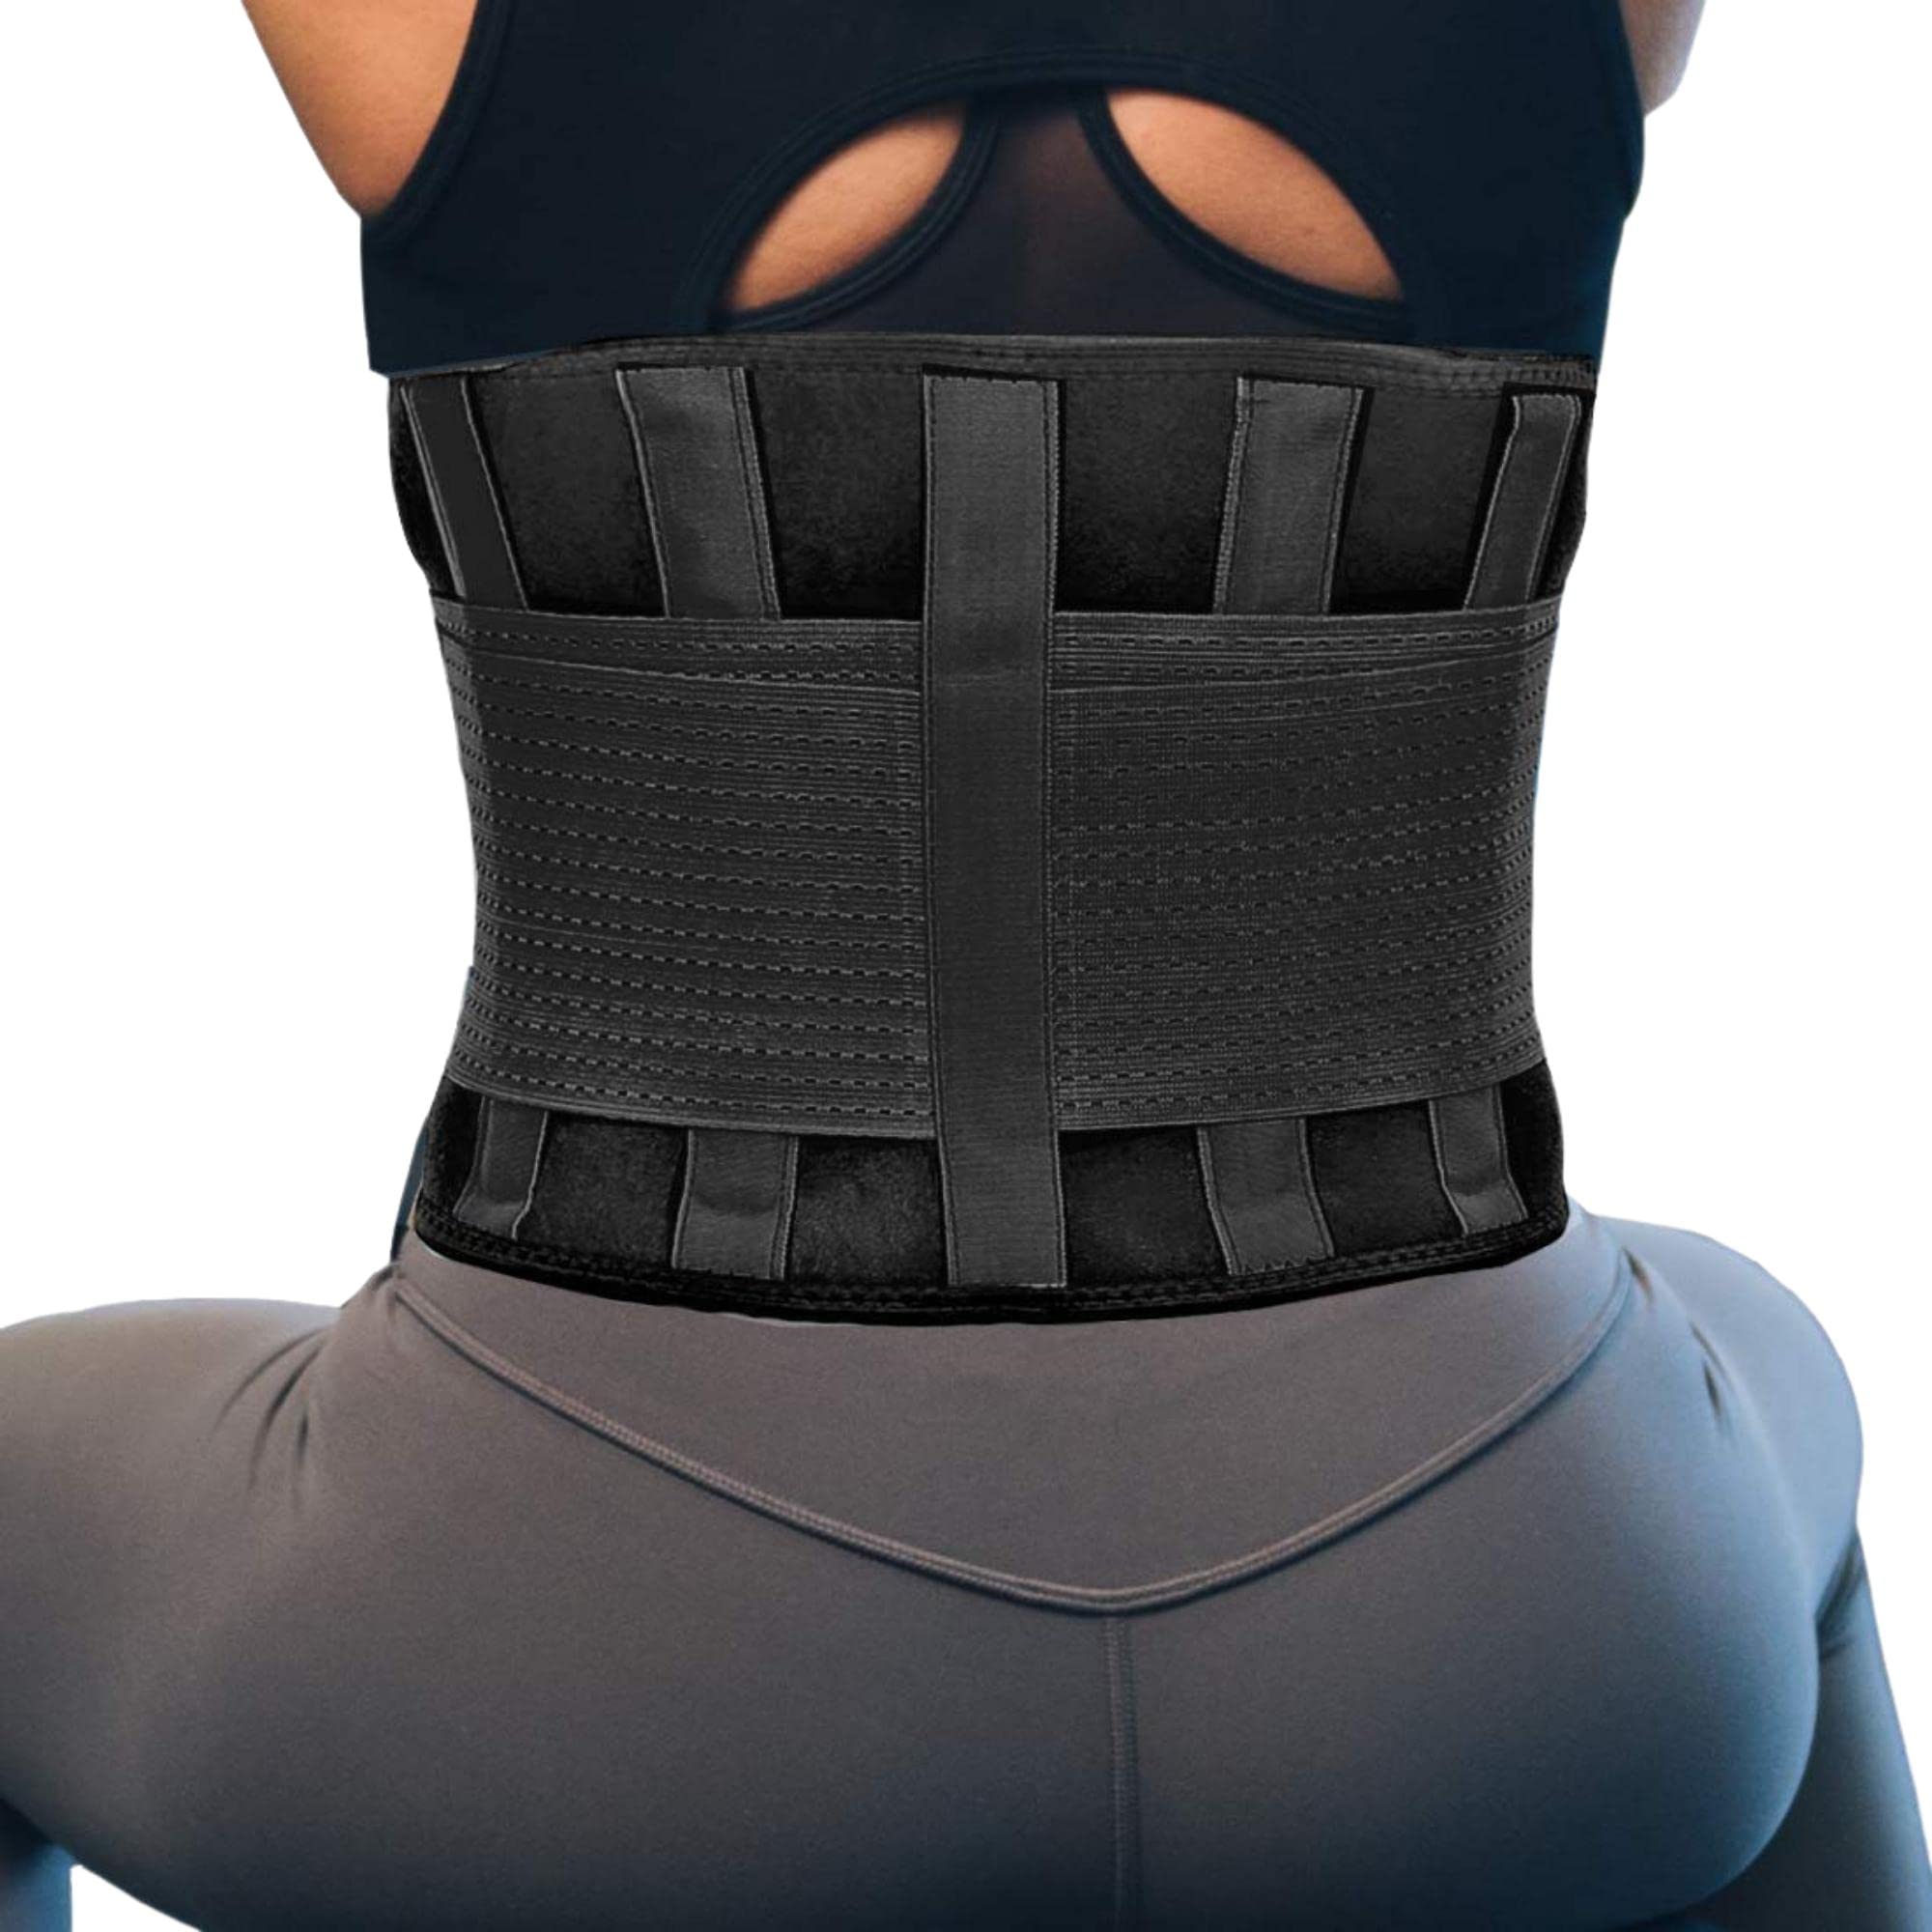 Back Brace for Lower Back Pain